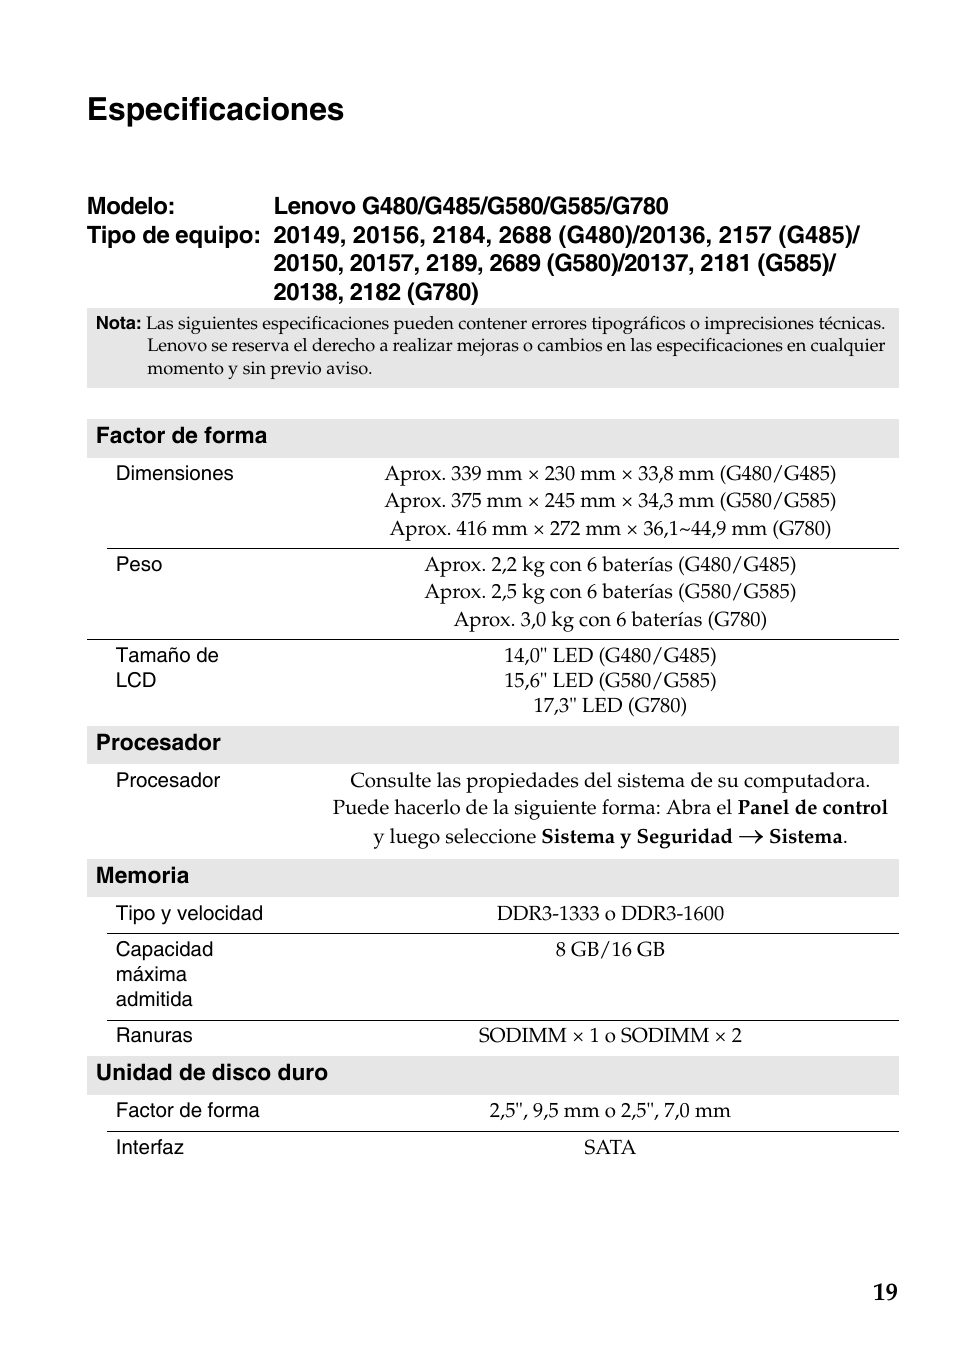 Especificaciones | Lenovo G585 Notebook Manual del usuario | Página 19 / 21